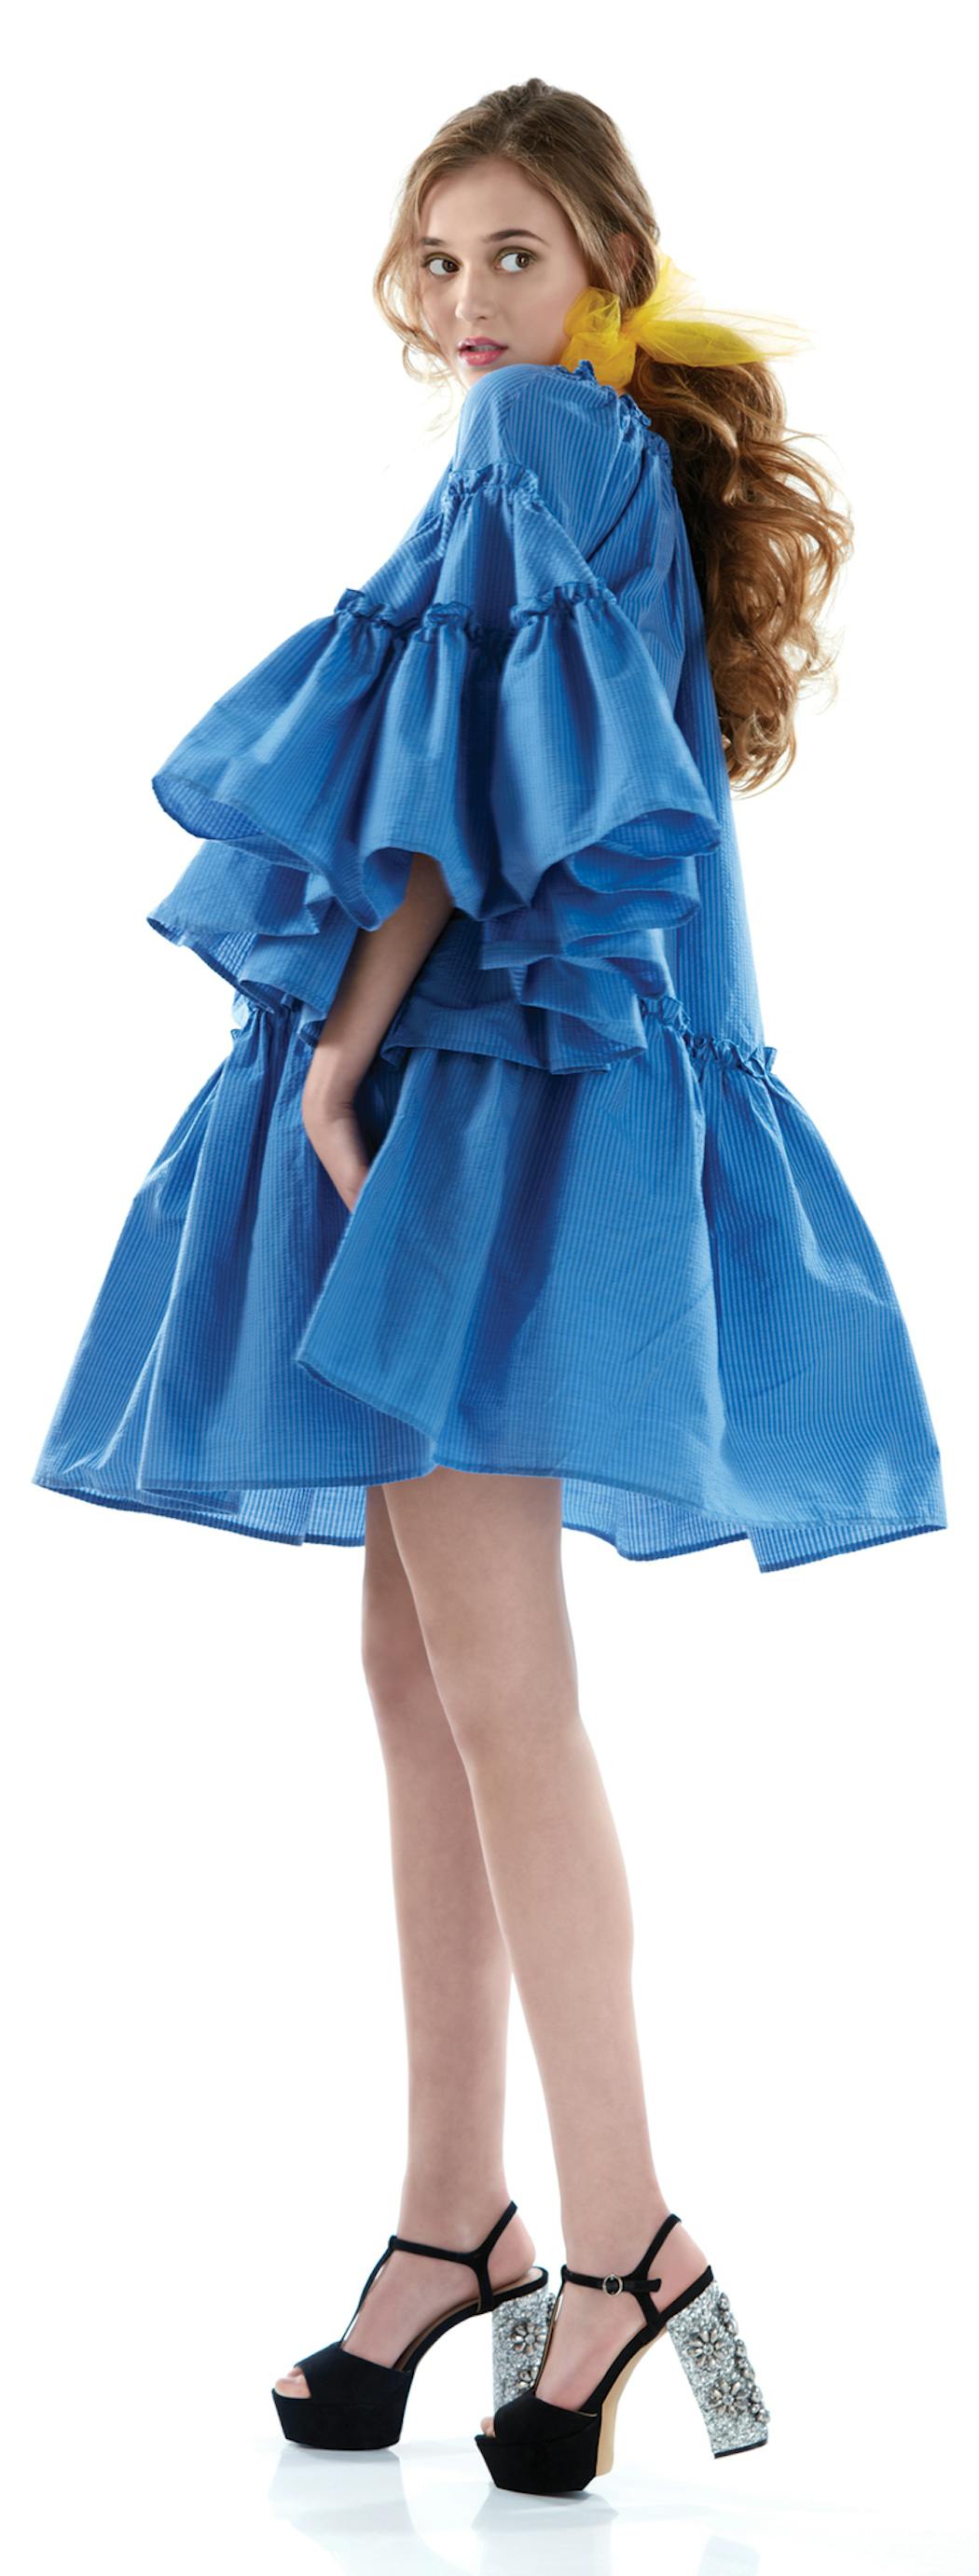 Tim Nehotte Photography
Avant-Garde Bride (blue ruffles shot)
MSGM dress $560 farfetch.com
Betsy Johnson platforms $70 dsw.com